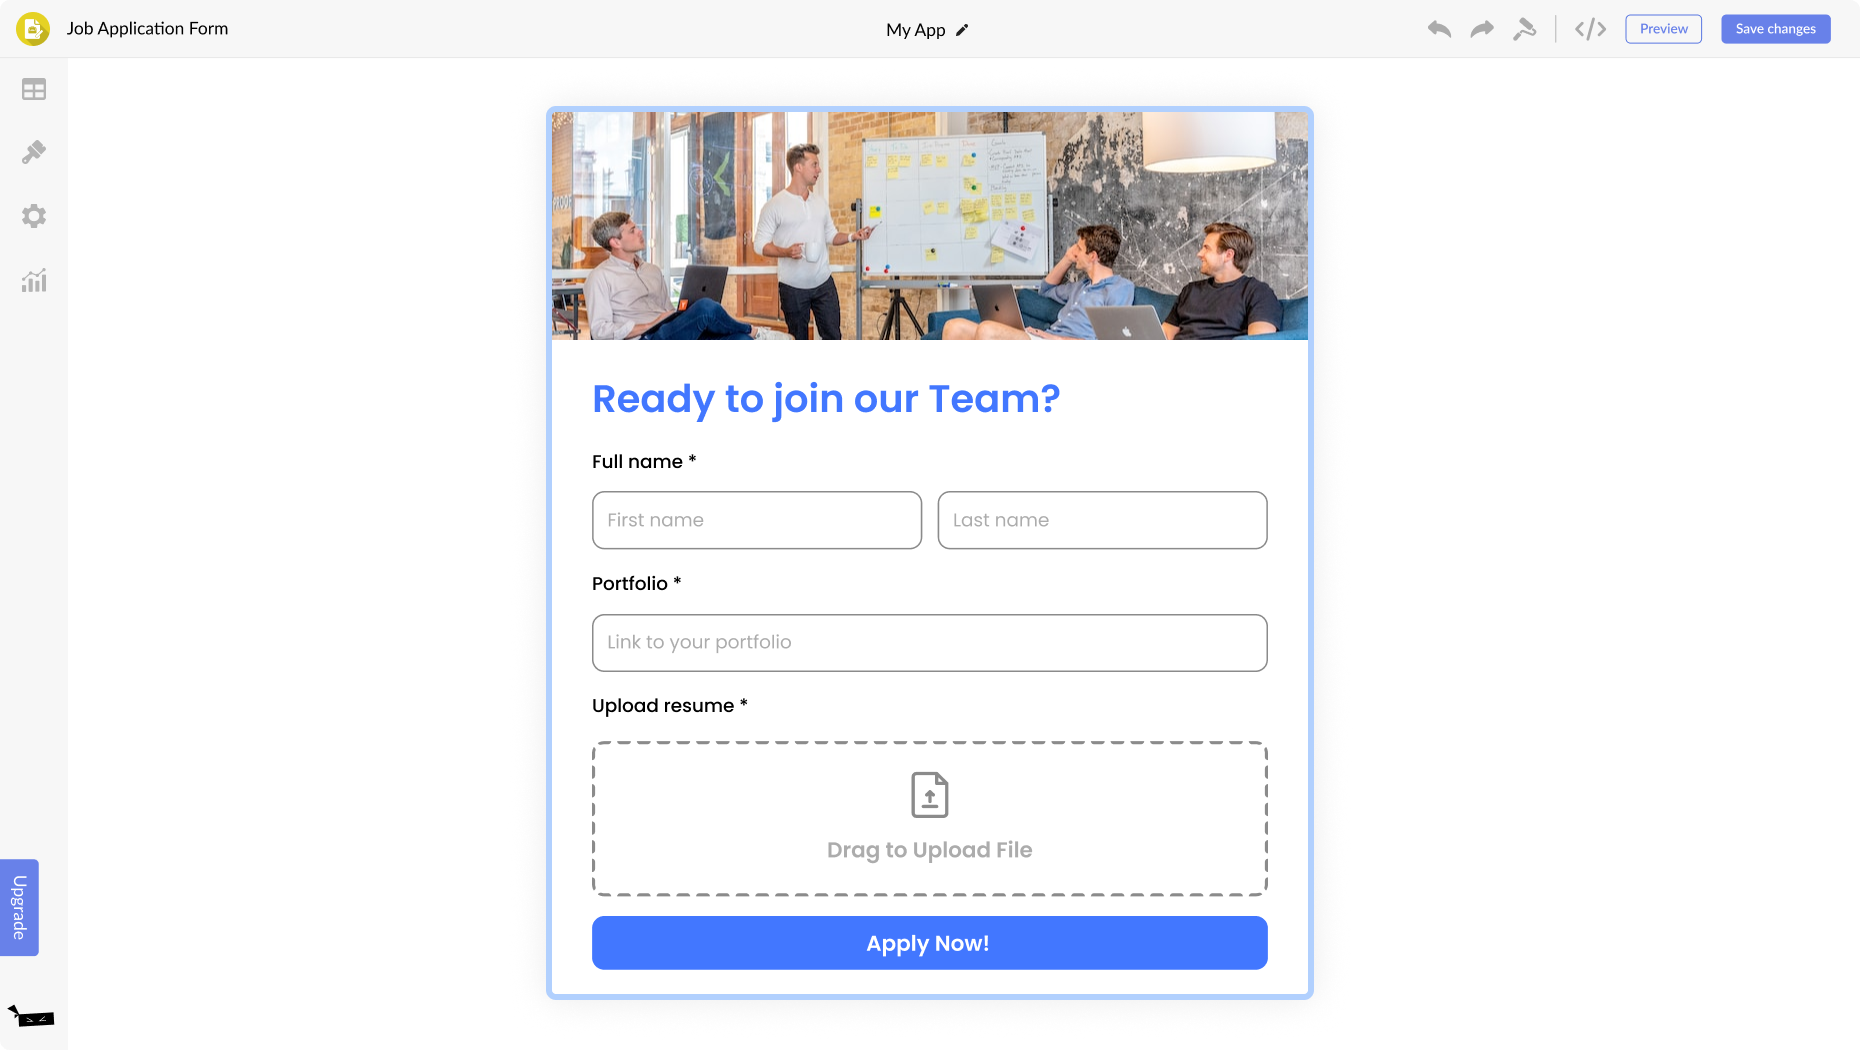 Job Application Form for Pixpa